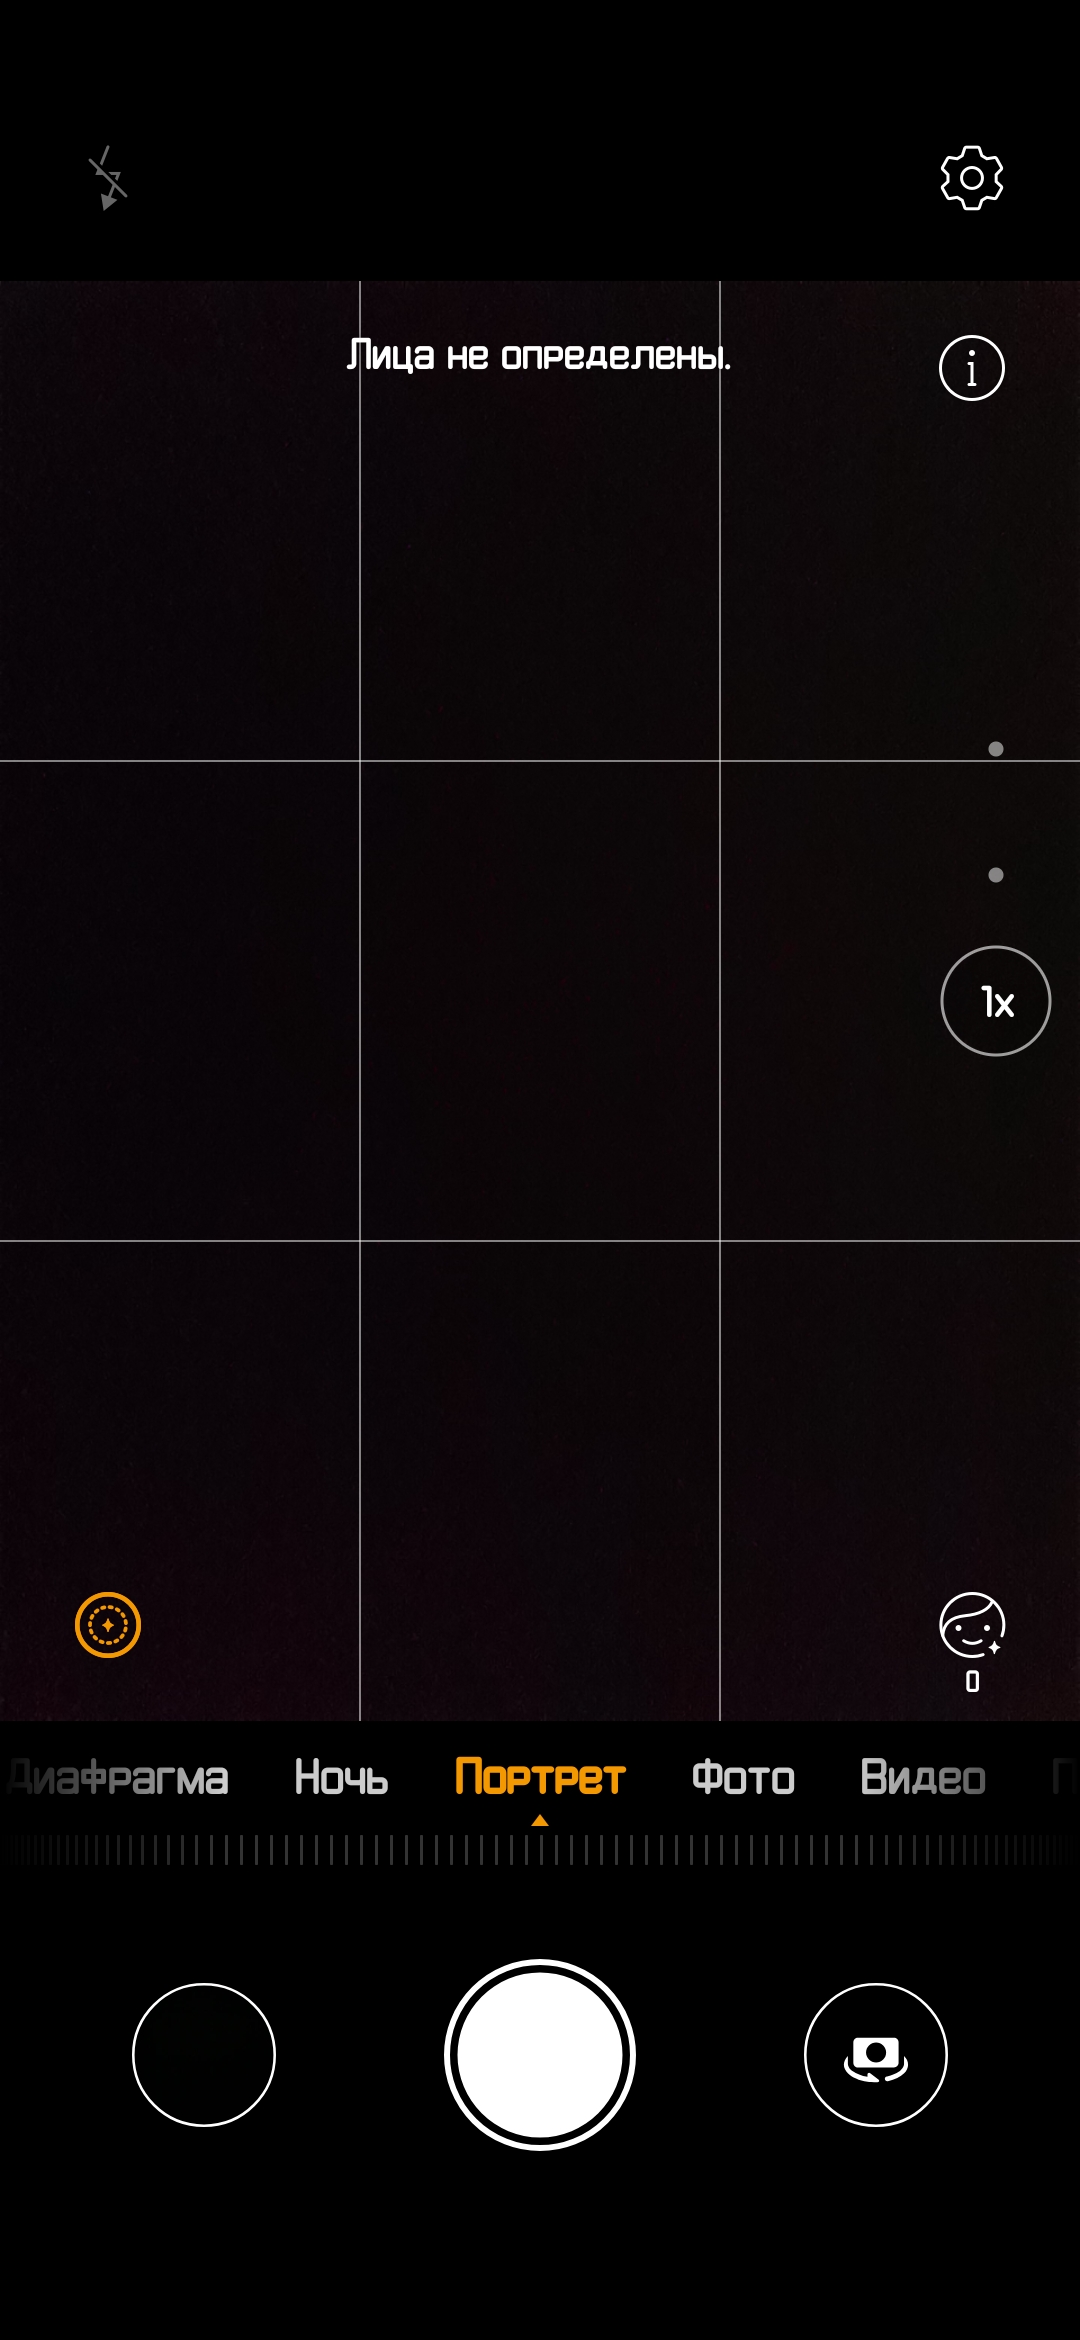 Обзор Huawei P30 Pro: прибор ночного видения-334